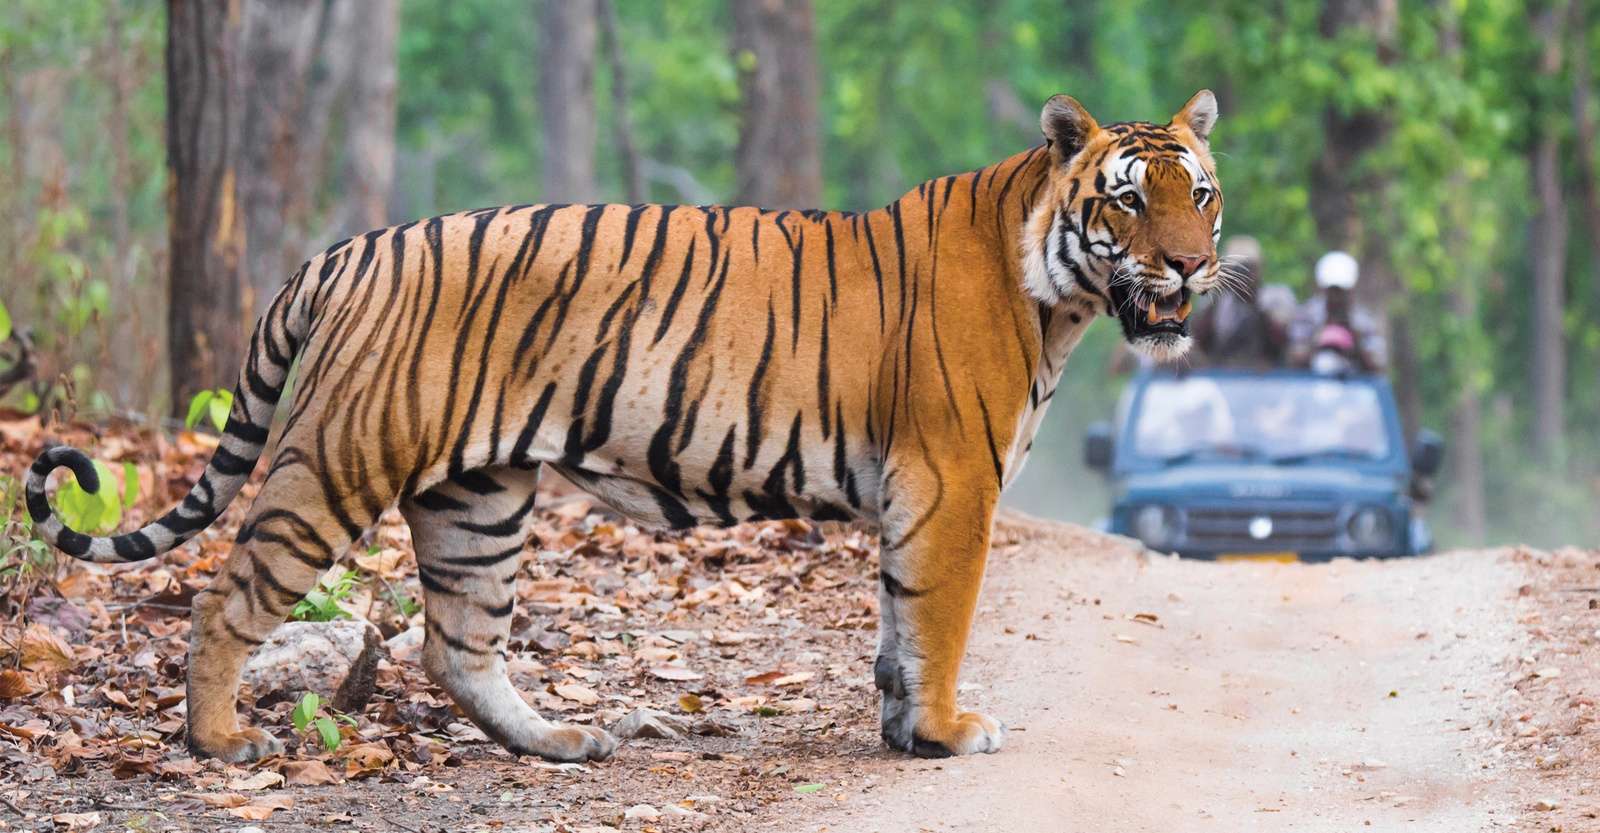 Bengal tiger, Ranthambhore National Park, India.